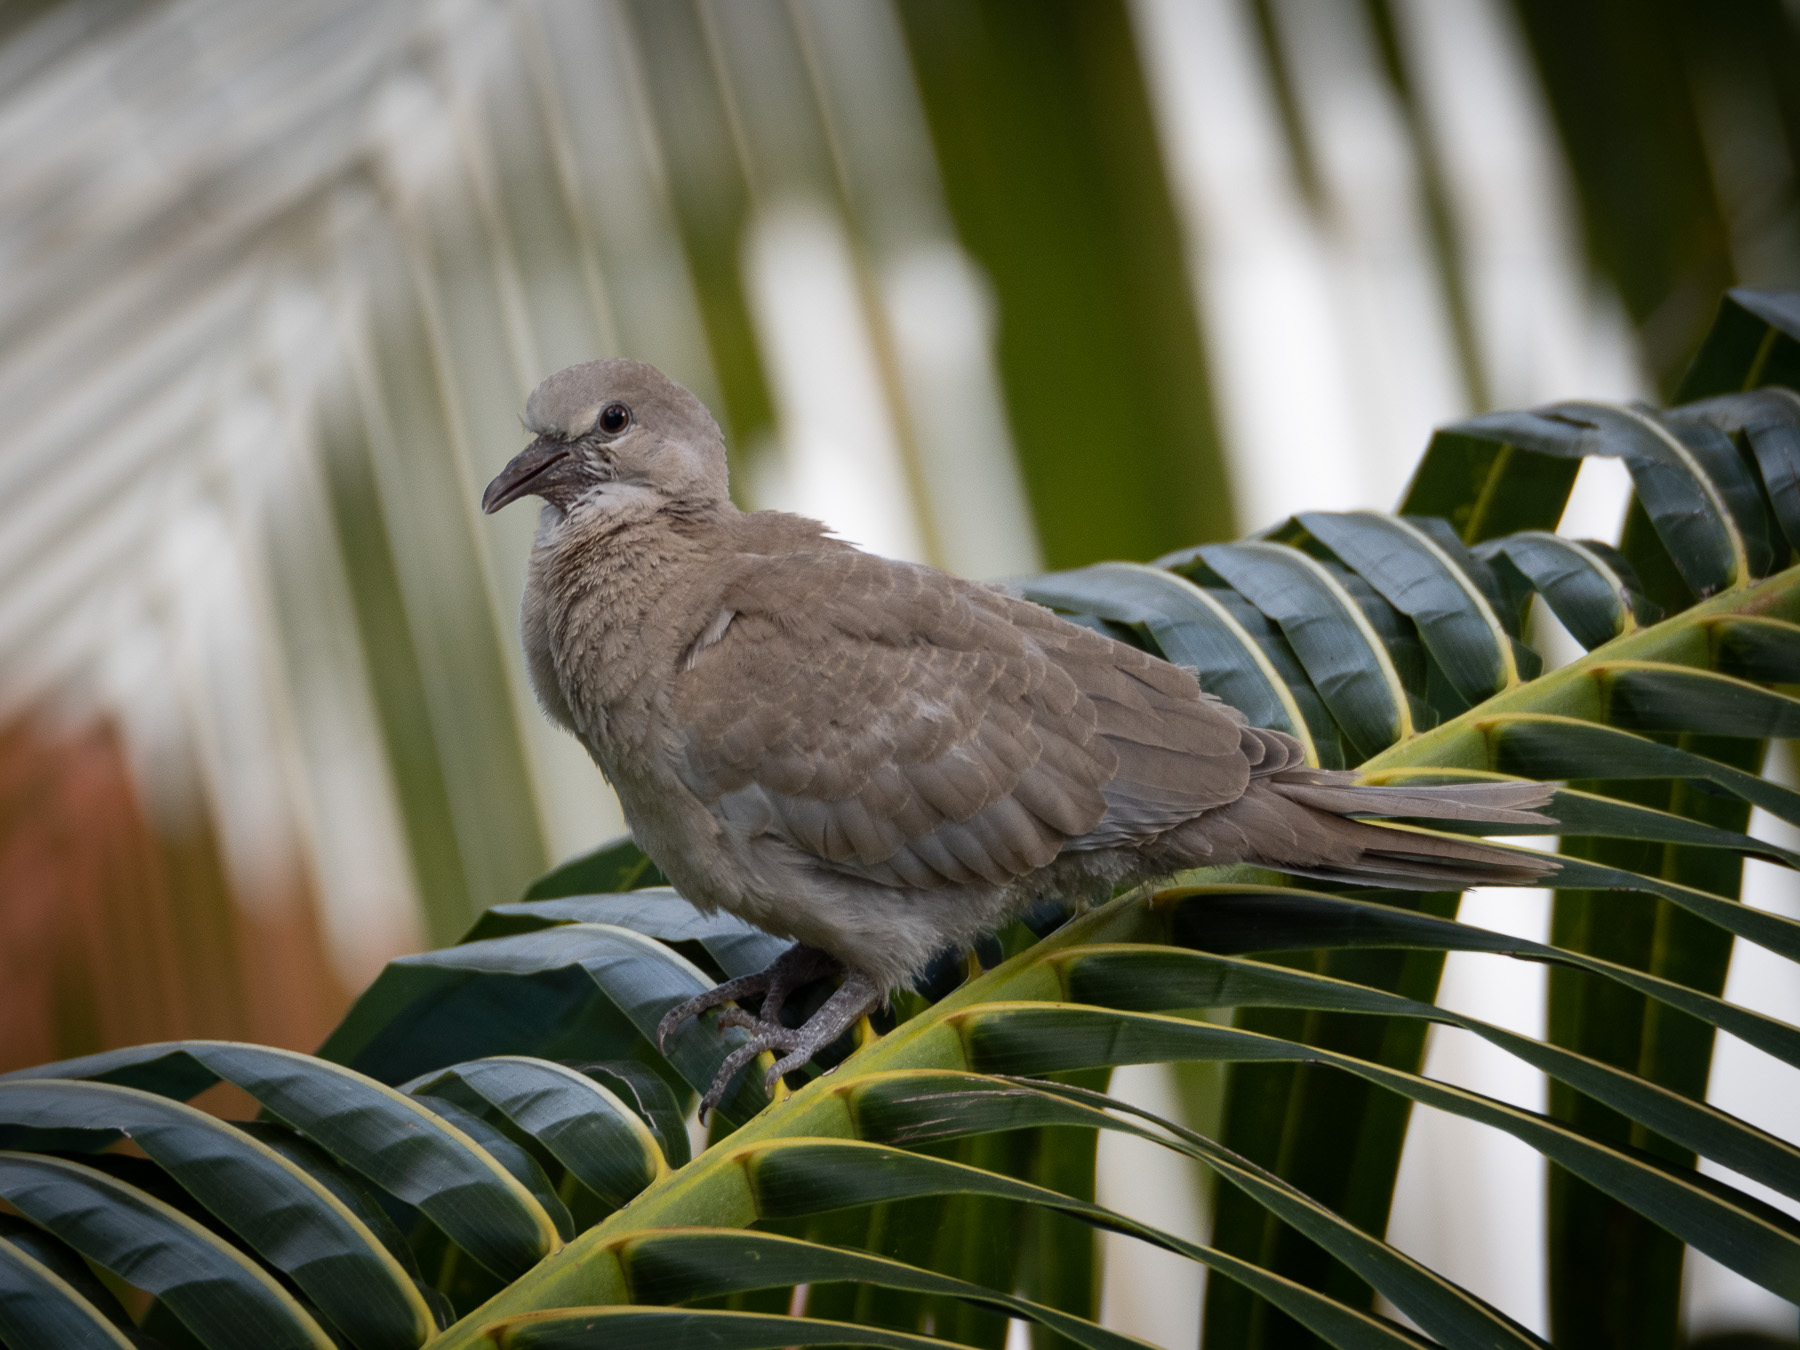 Горлицы и их гнездо, сооружённое между ветвей пальмы.
Канкун, Юкатан. Март2021 г. Автор фото: Сутормина Марина